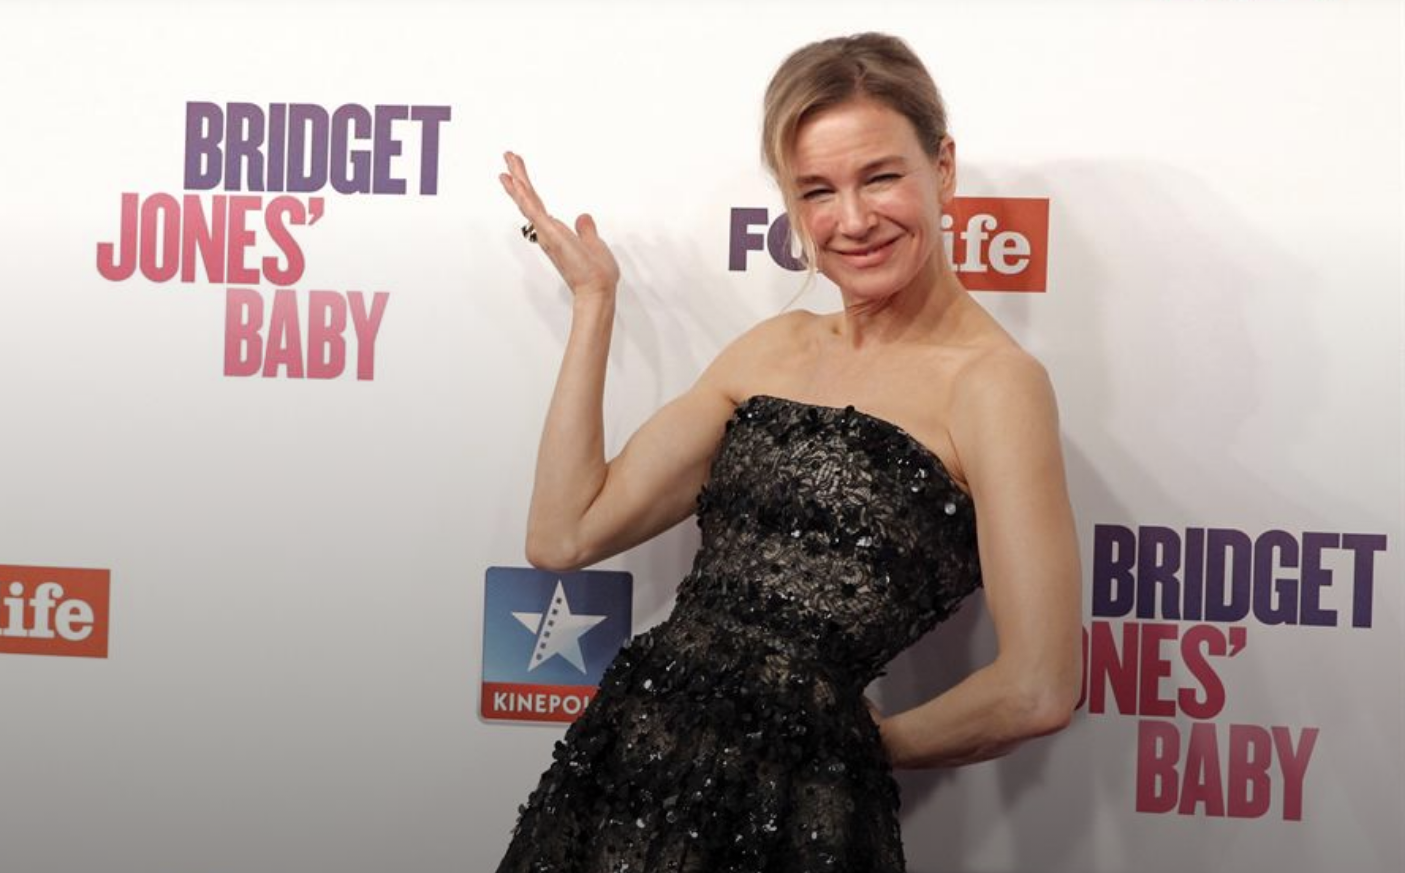 Fotografía de archivo de la actriz Renée Zellweger en el estreno de 'Bridget Jones'Baby'. /EFE